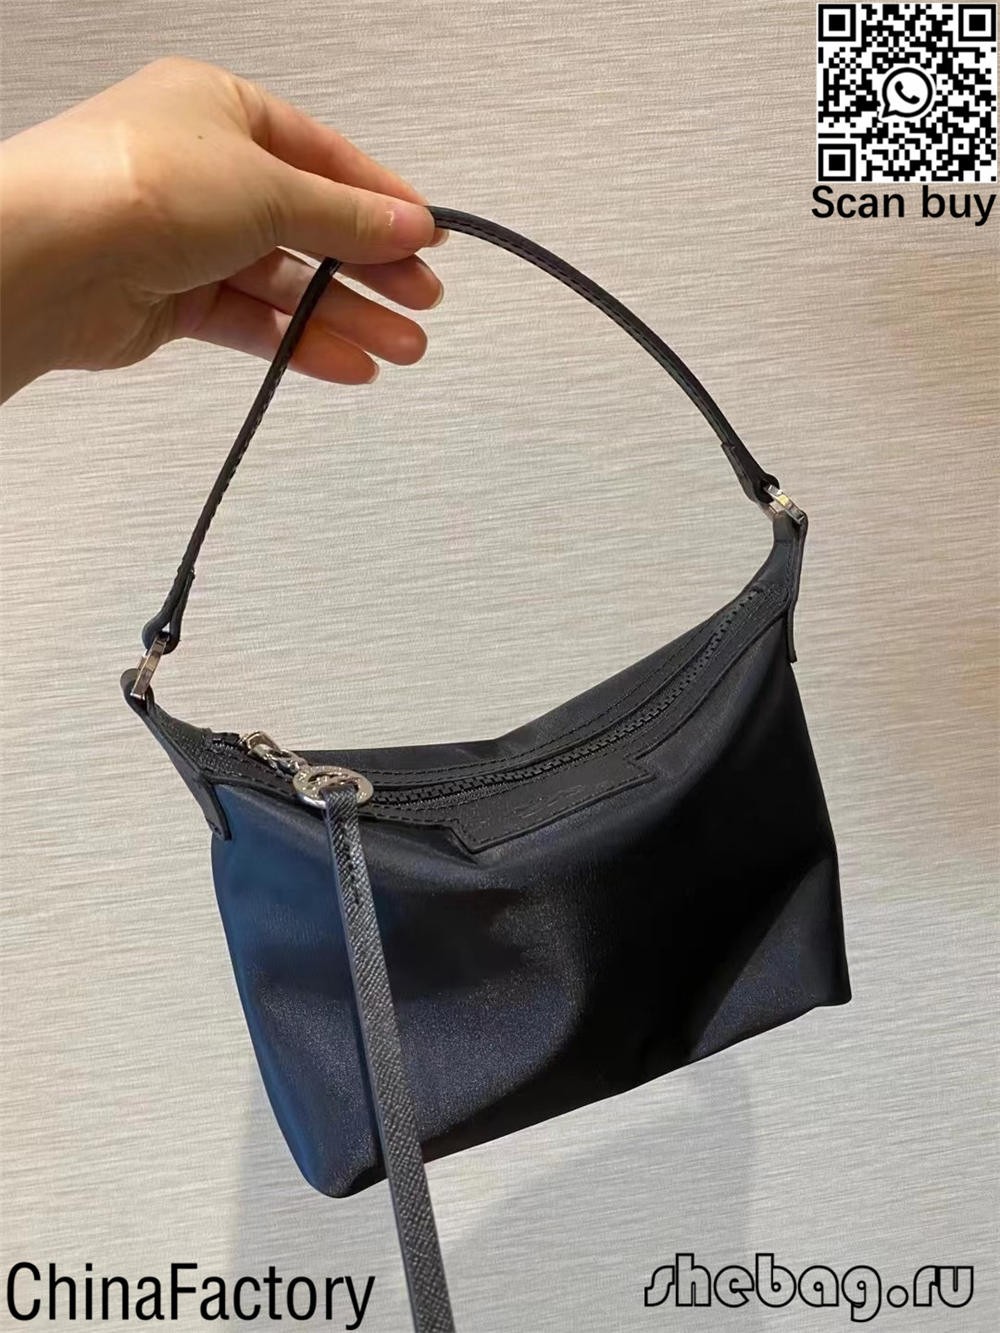 Đánh giá về 10 chiếc túi thiết kế bản sao nhẹ đáng mua nhất (cập nhật năm 2022) -Túi Louis Vuitton giả chất lượng nhất Cửa hàng trực tuyến, túi thiết kế nhái ru